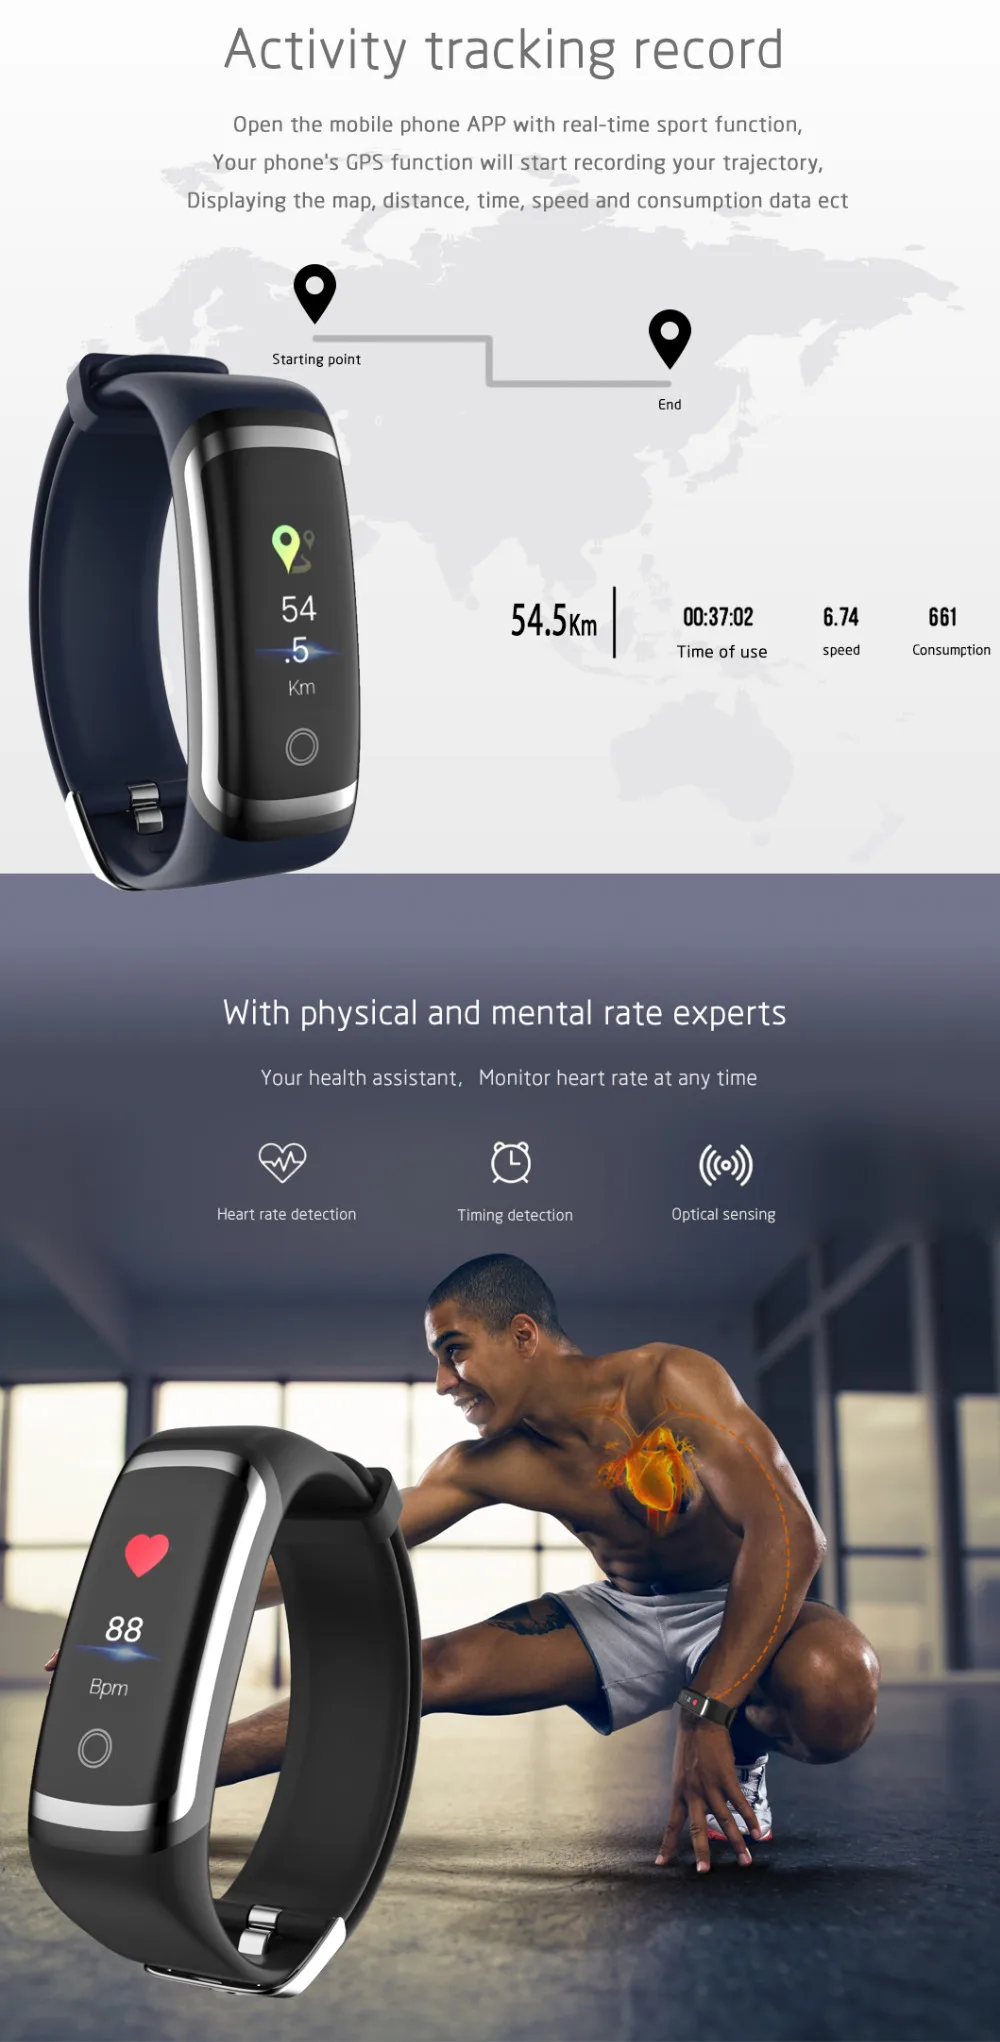 Спортивные фитнес-часы Wearpai, умные часы M4 с монитором сердечного ритма, браслет с напоминанием калорий, водонепроницаемые Смарт-часы для iPhone xiaomi